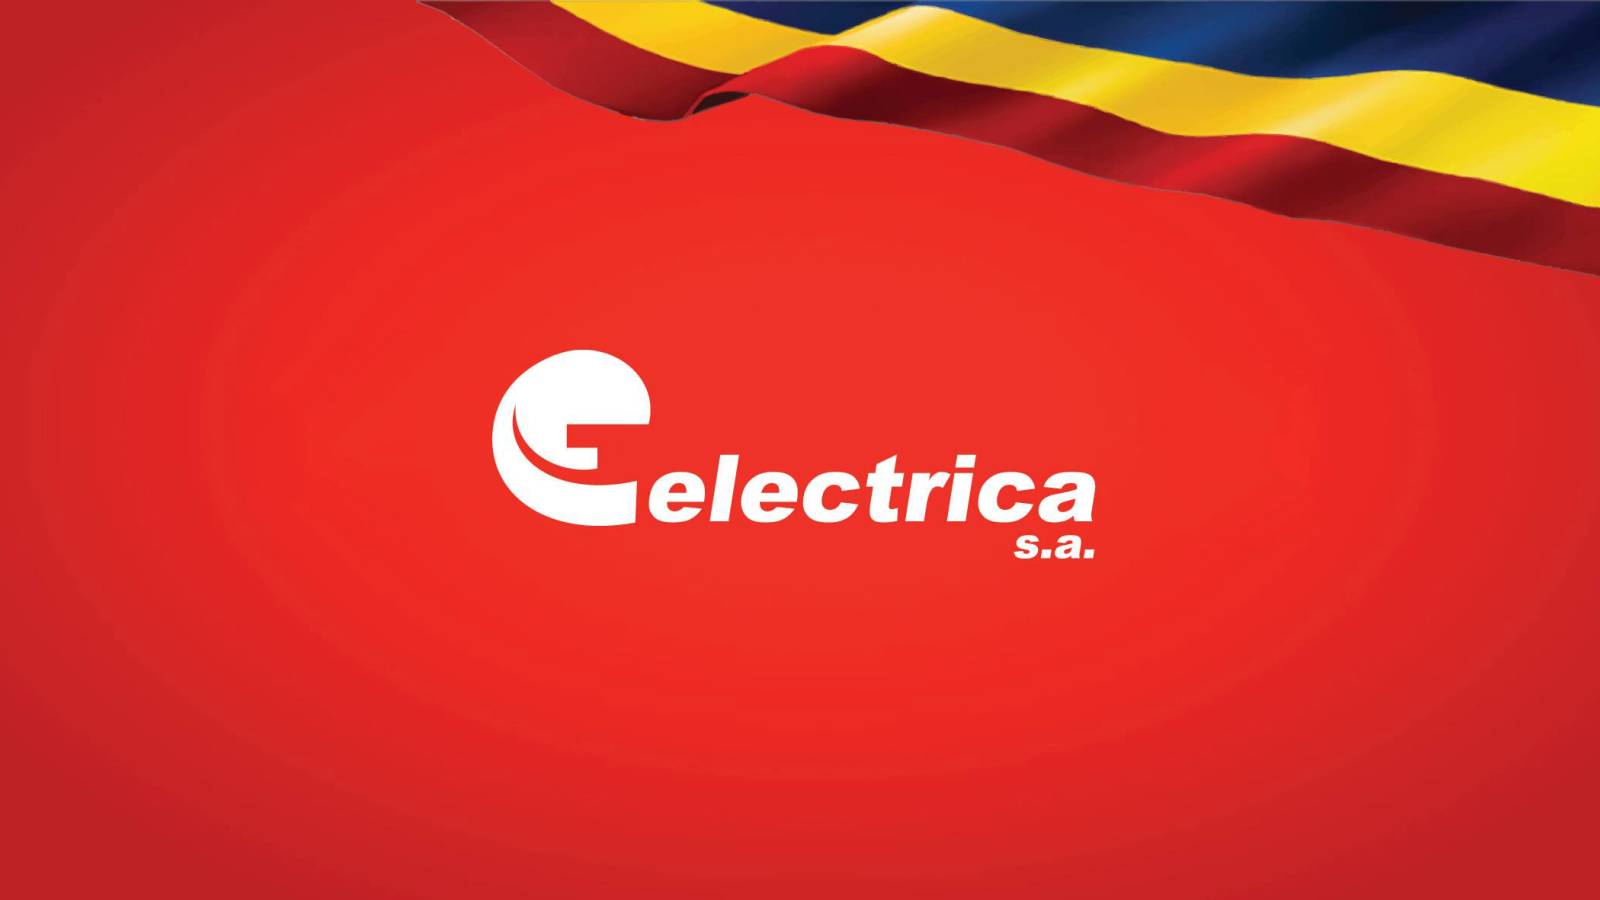 Avviso Ufficiale Electrica LAST MINUTE Decisione IMPORTANTE Clienti Rumeni